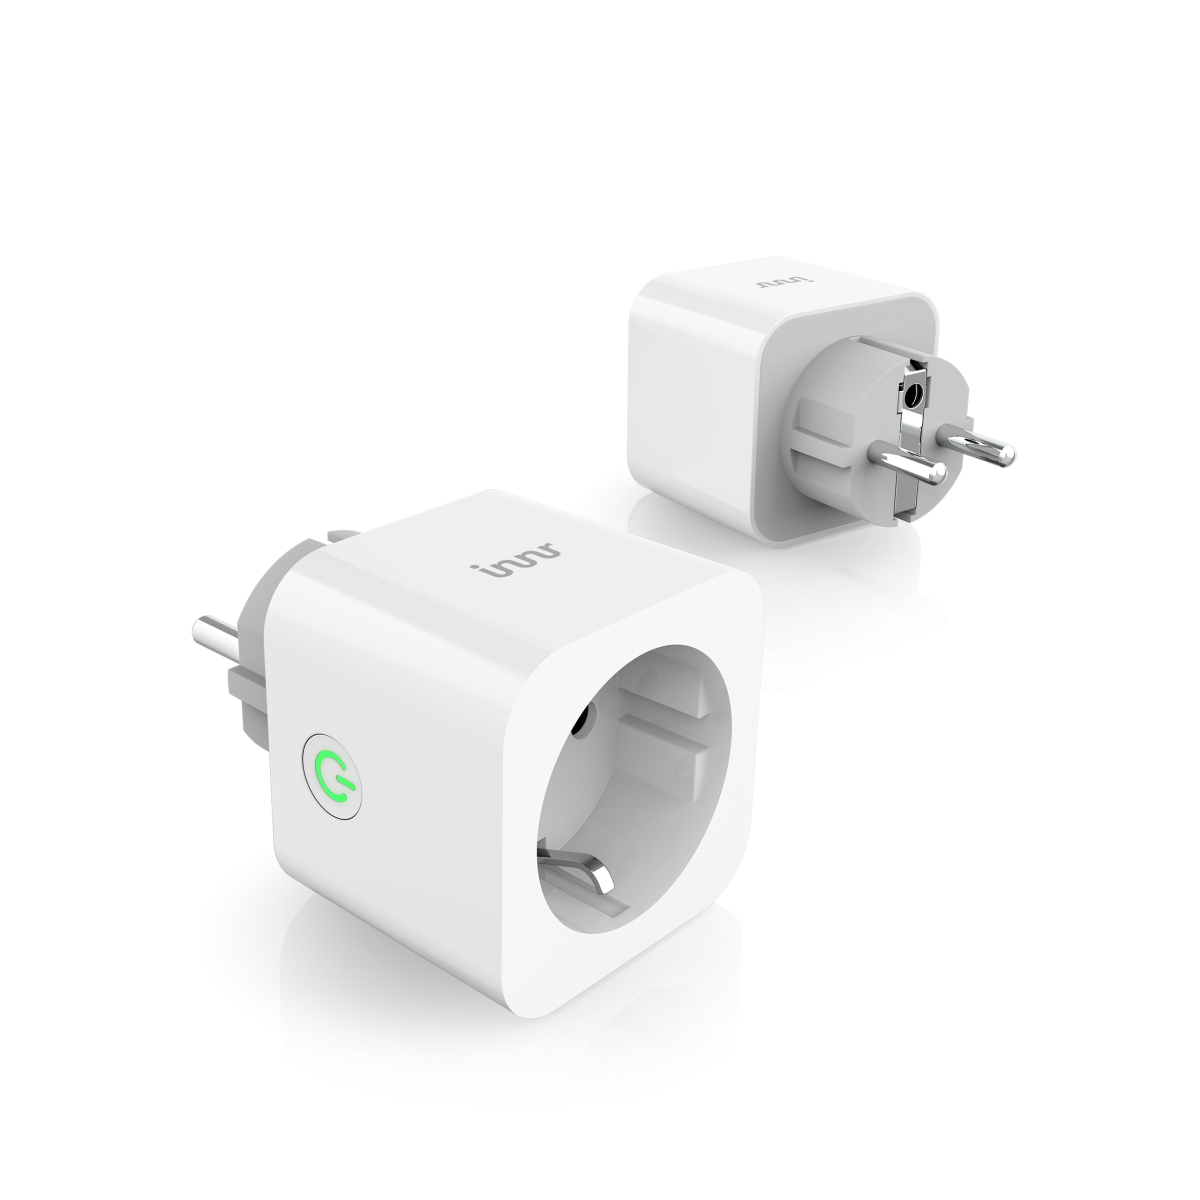 3.0 INNR power monitoring) (mit Steckdose ZigBee Smart (2-pack) Smart Steckdose Plug Smart